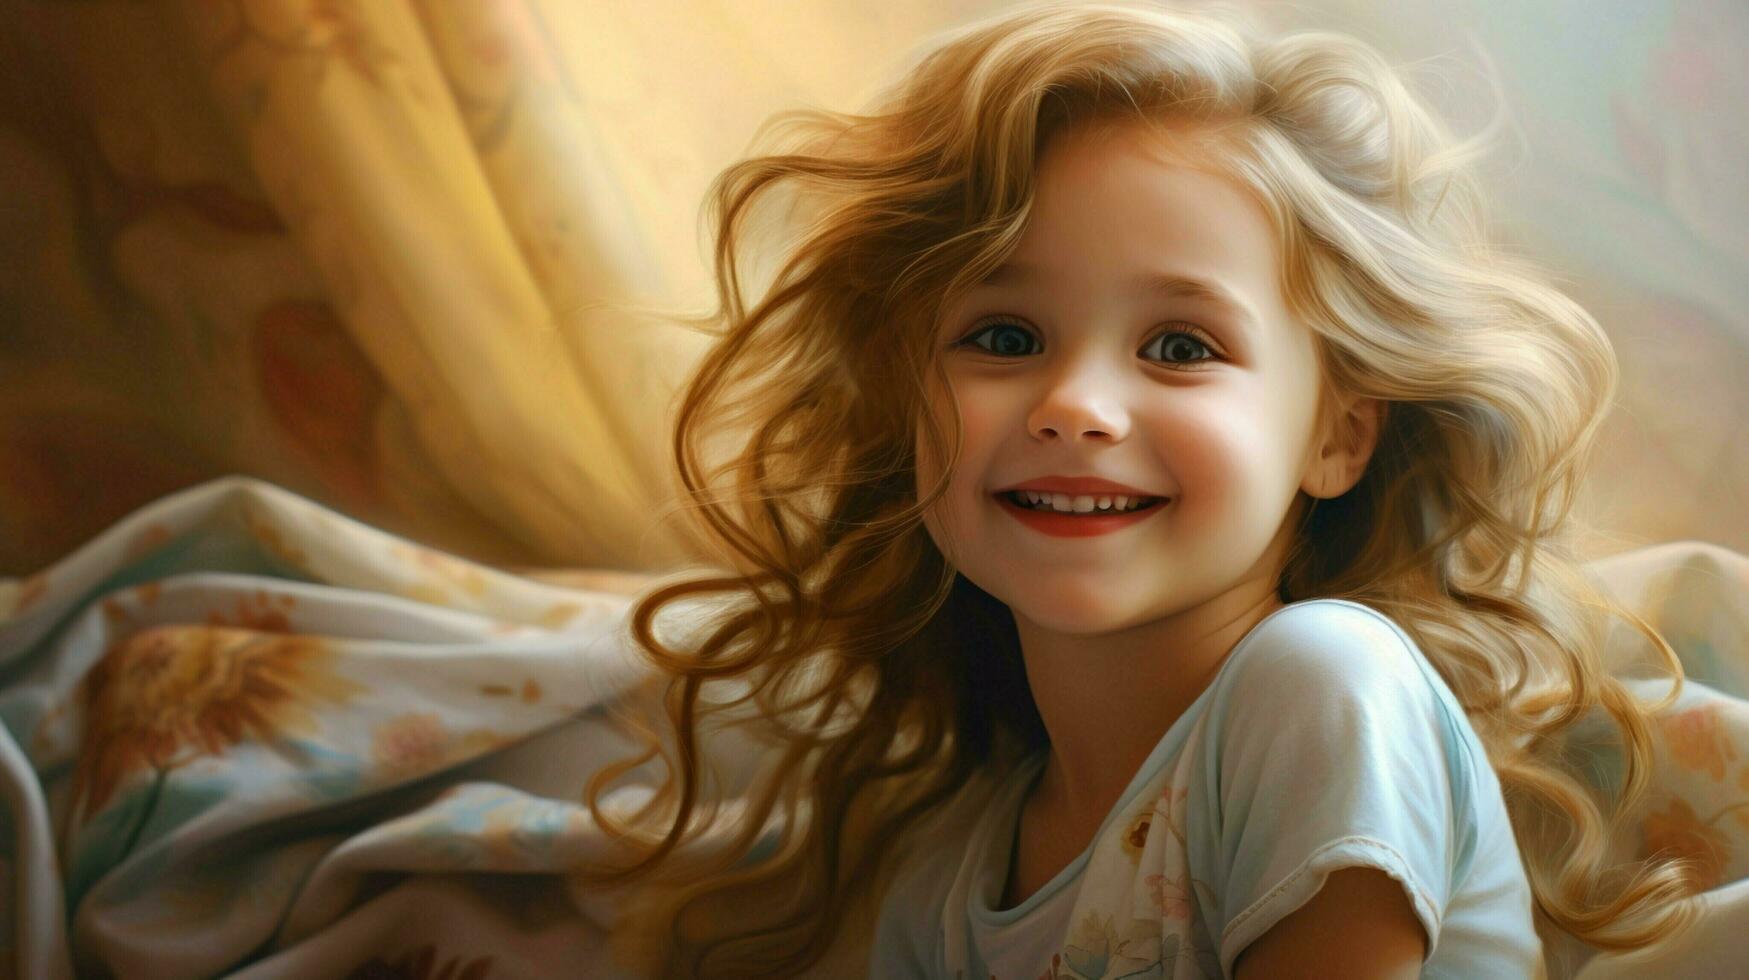 souriant enfant mignonne portrait de bonne humeur fille petit enfance photo